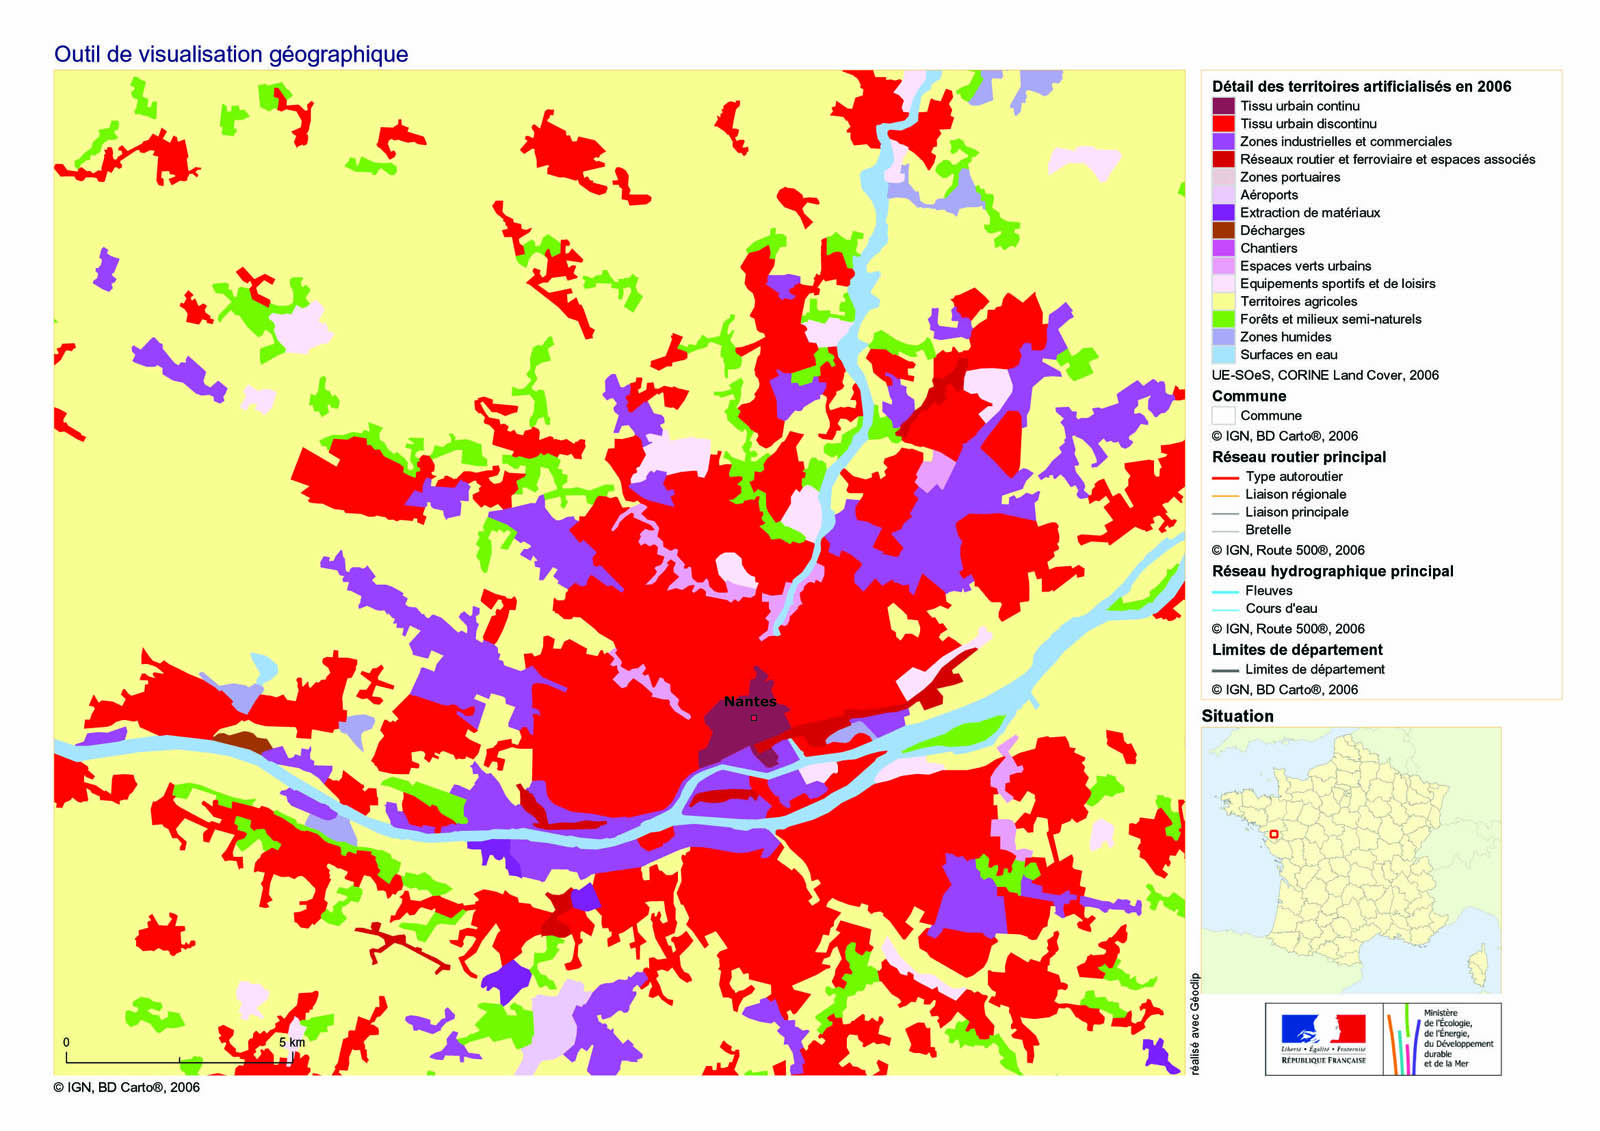 Occupation du sol de l’agglomération Nantaise – Détail des territoires artificialisés en 2006 (Source : Corine Land Cover)